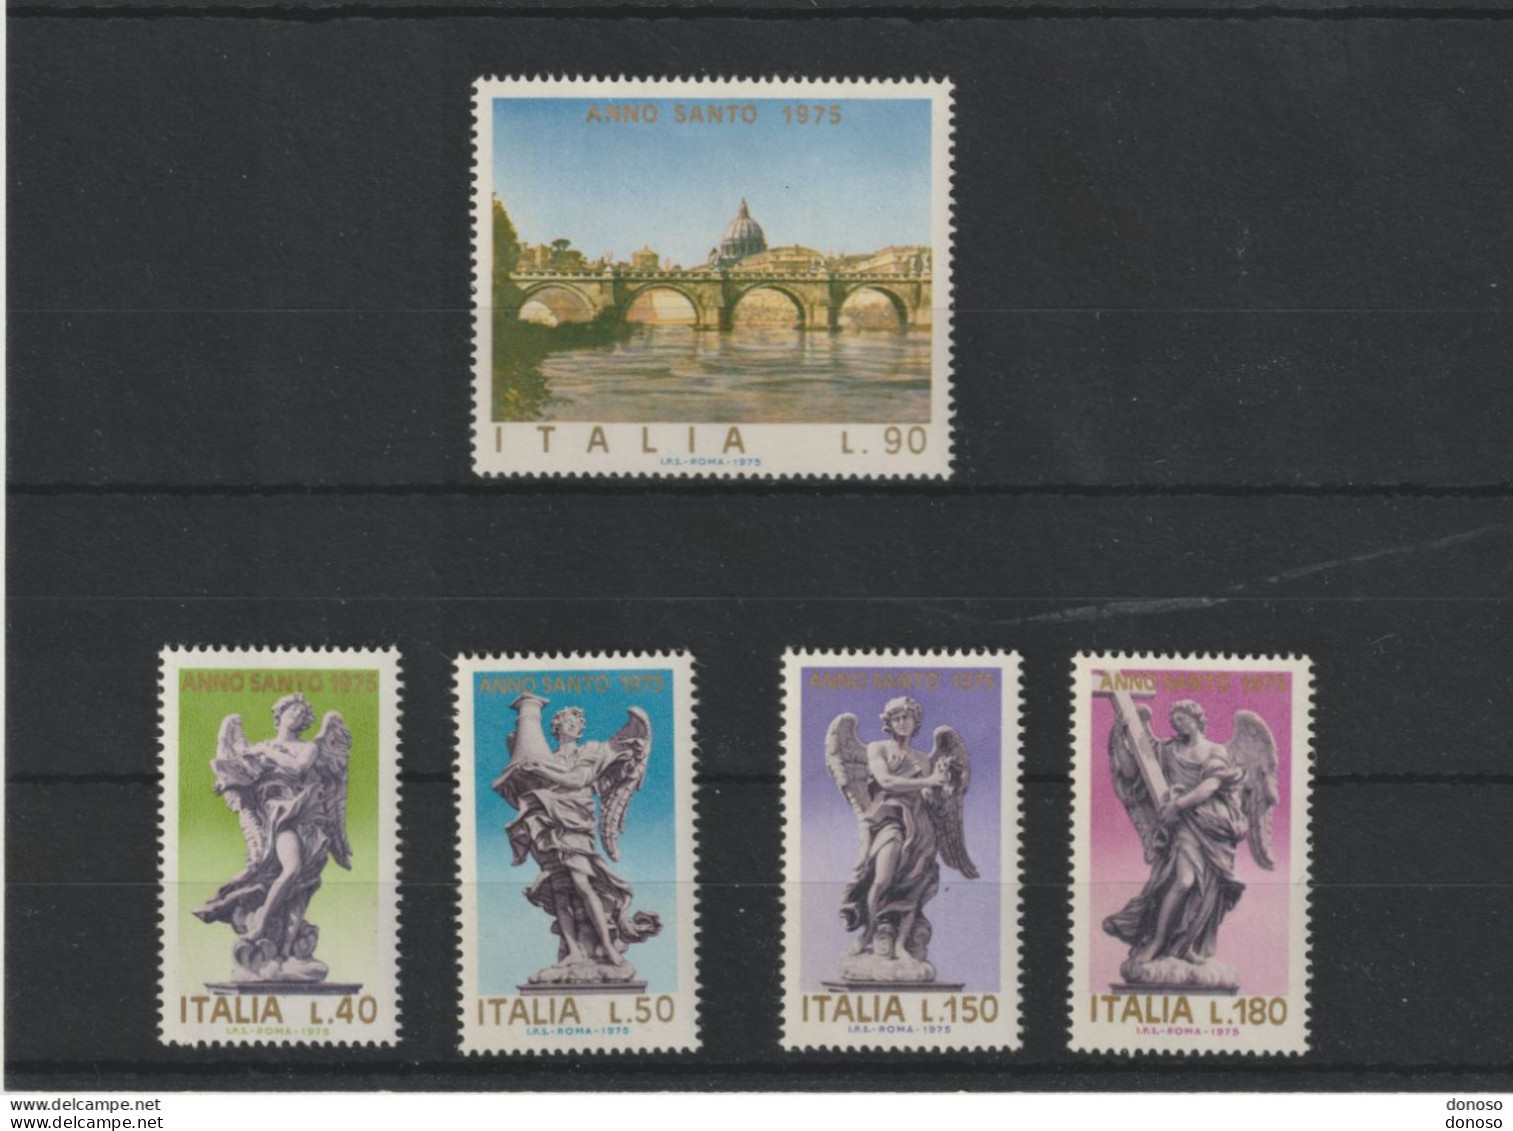 ITALIE 1975 Année Sainte, Pont Saint Ange Et Sculptures D'anges Yvert 1211-1215, Michel 1478-1482 NEUF** MNH - 1971-80: Neufs